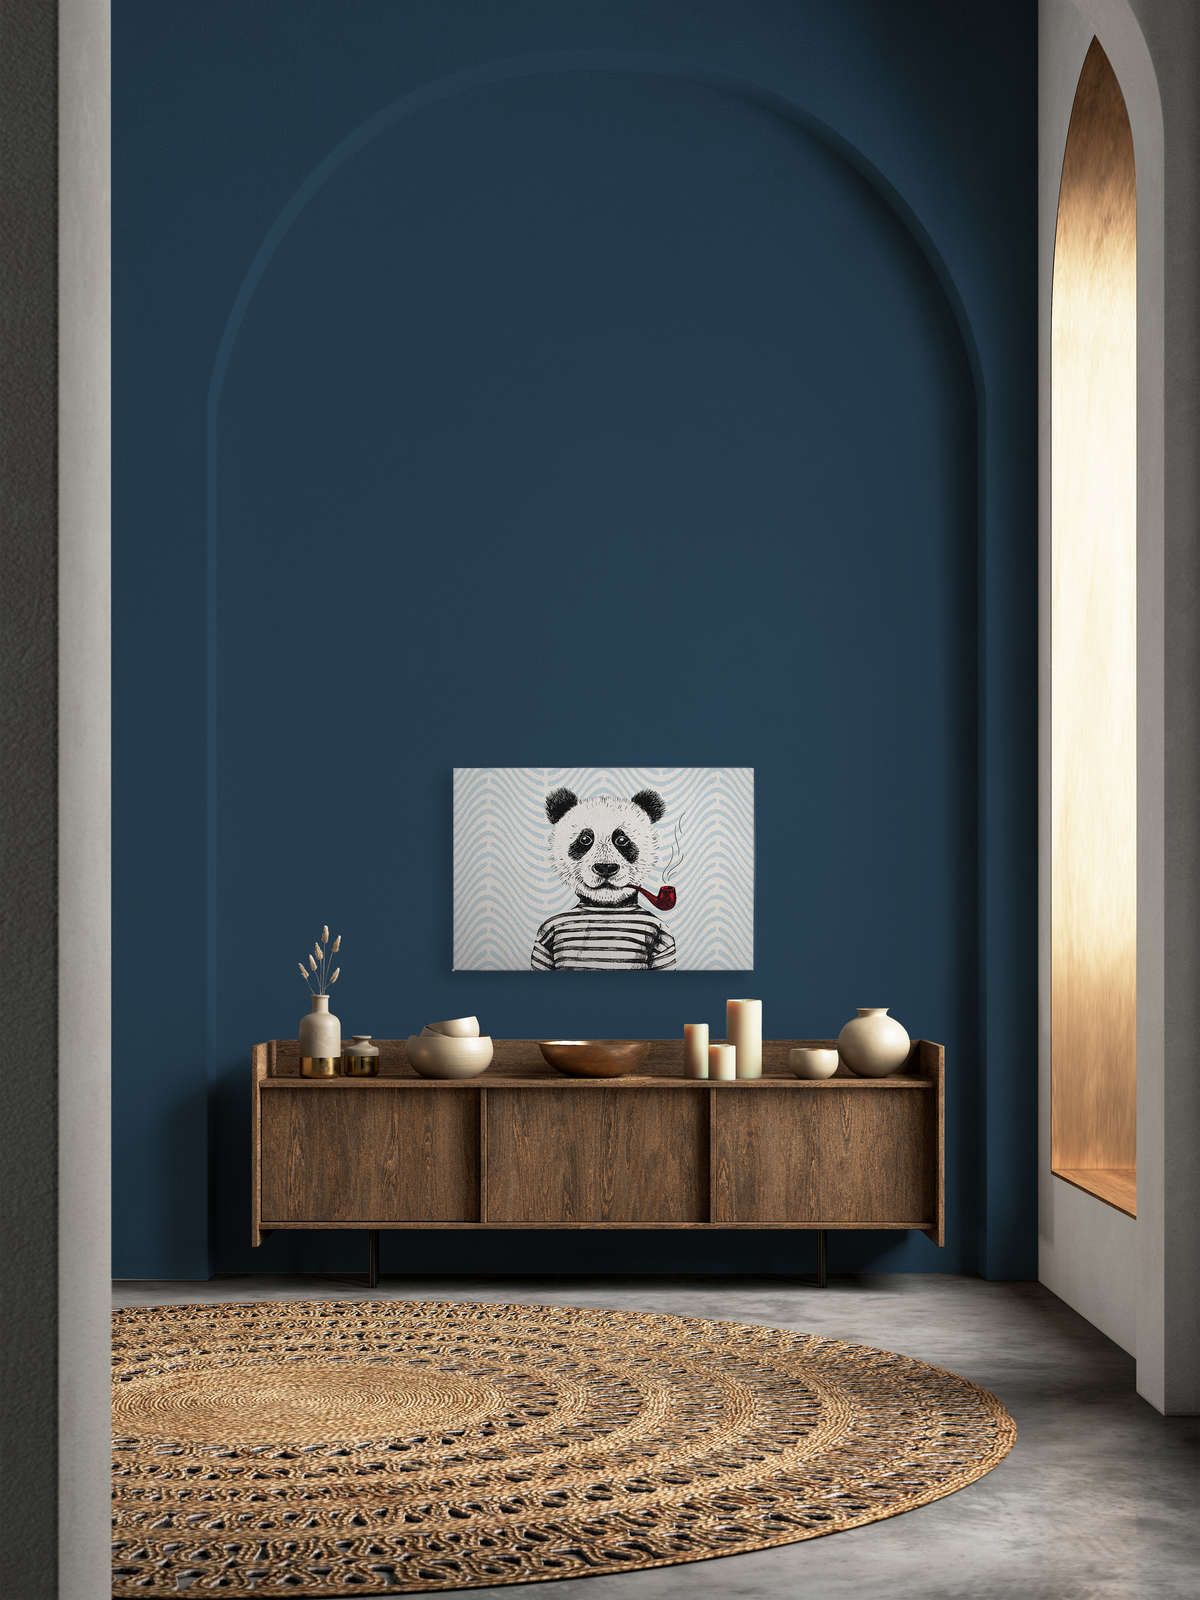             Canvas schilderij Komisch ontwerp voor kinderkamer Panda motief - 0.90 m x 0.60 m
        